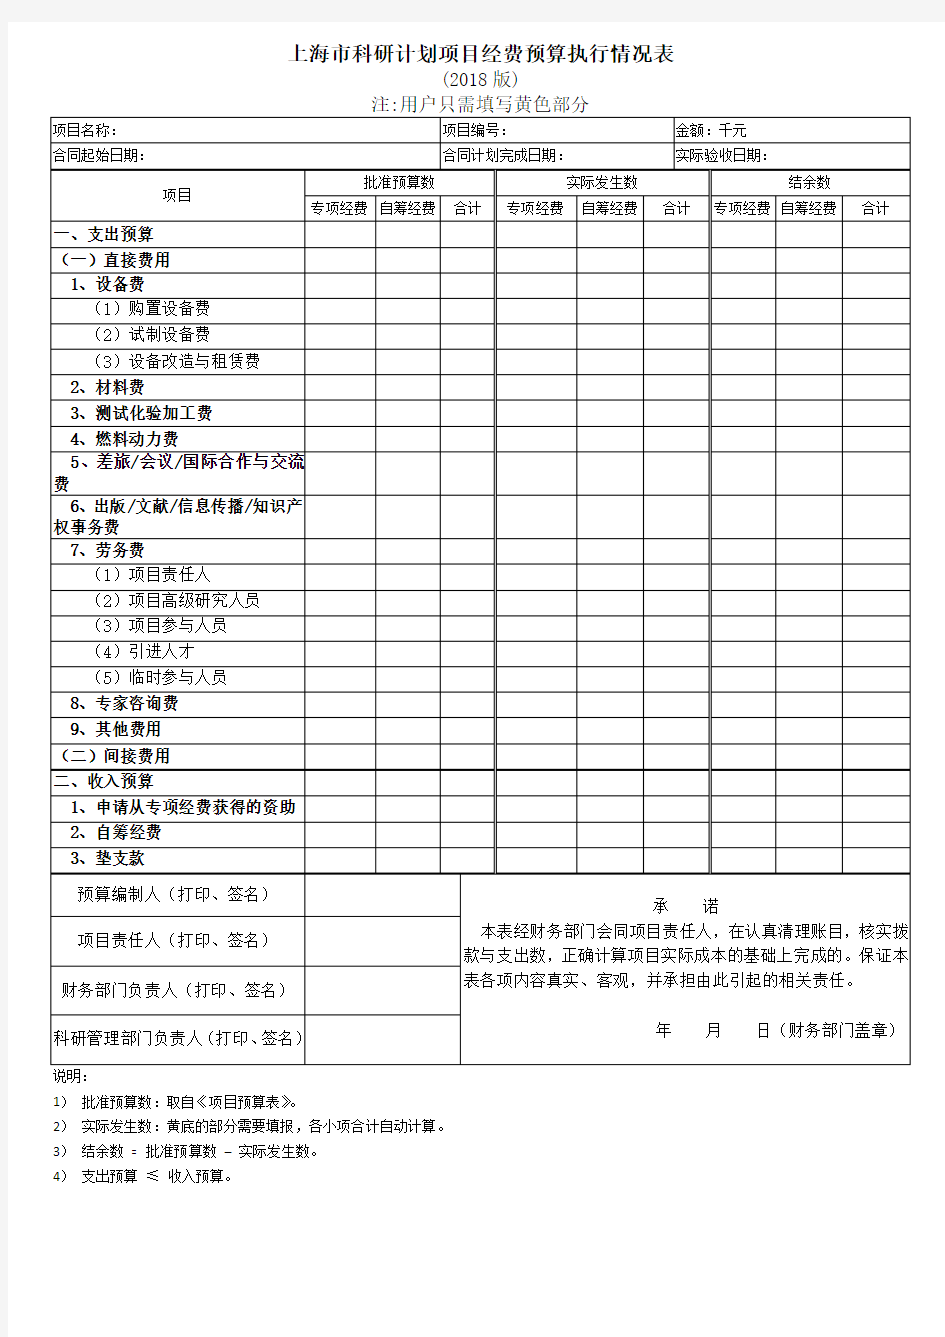 上海市科研计划项目经费预算执行情况表